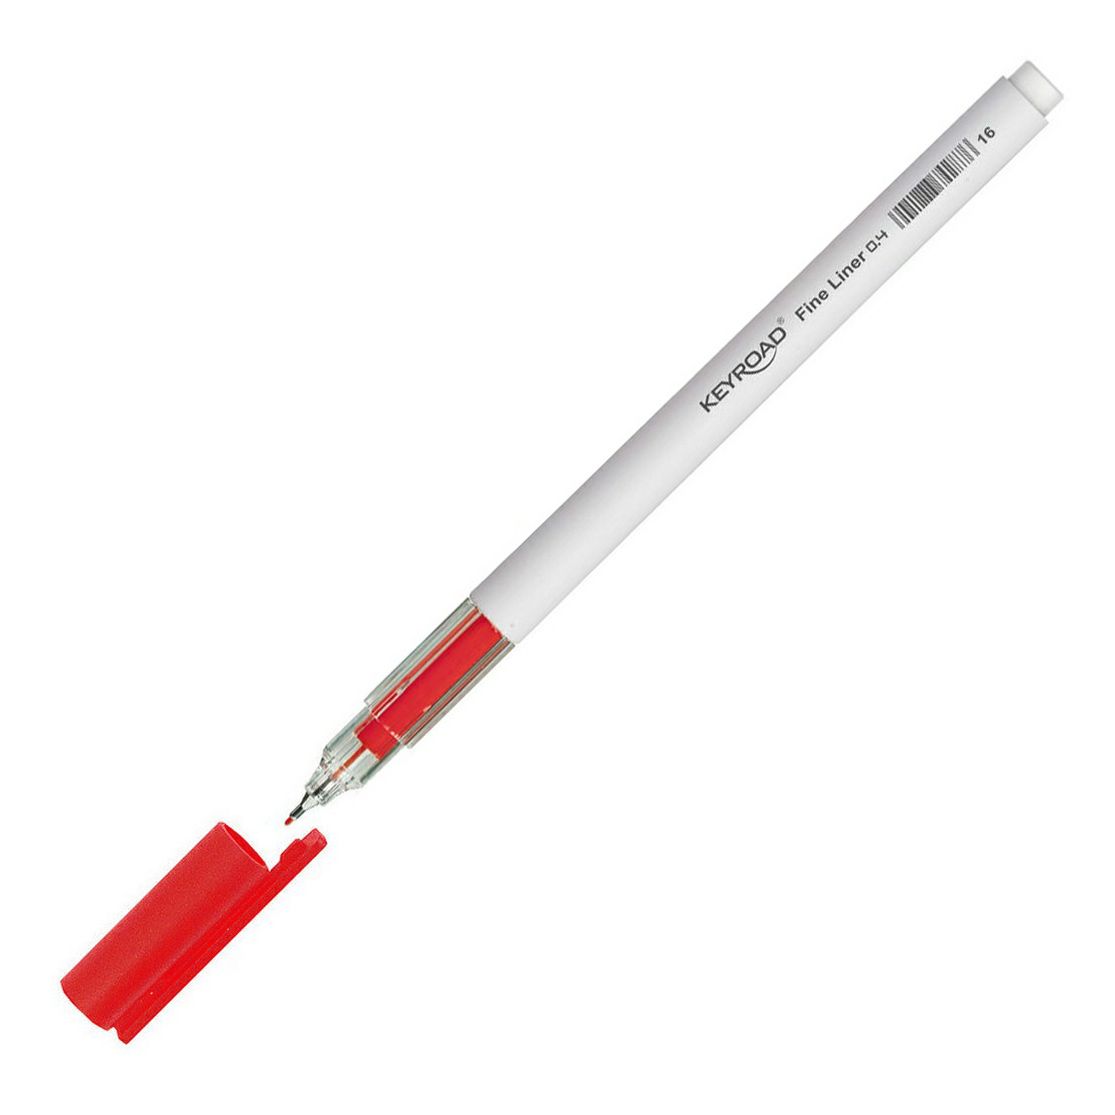 Ручка капиллярная Keyroad Fineliner пишущий узел 0,4 мм цвет чернил красный